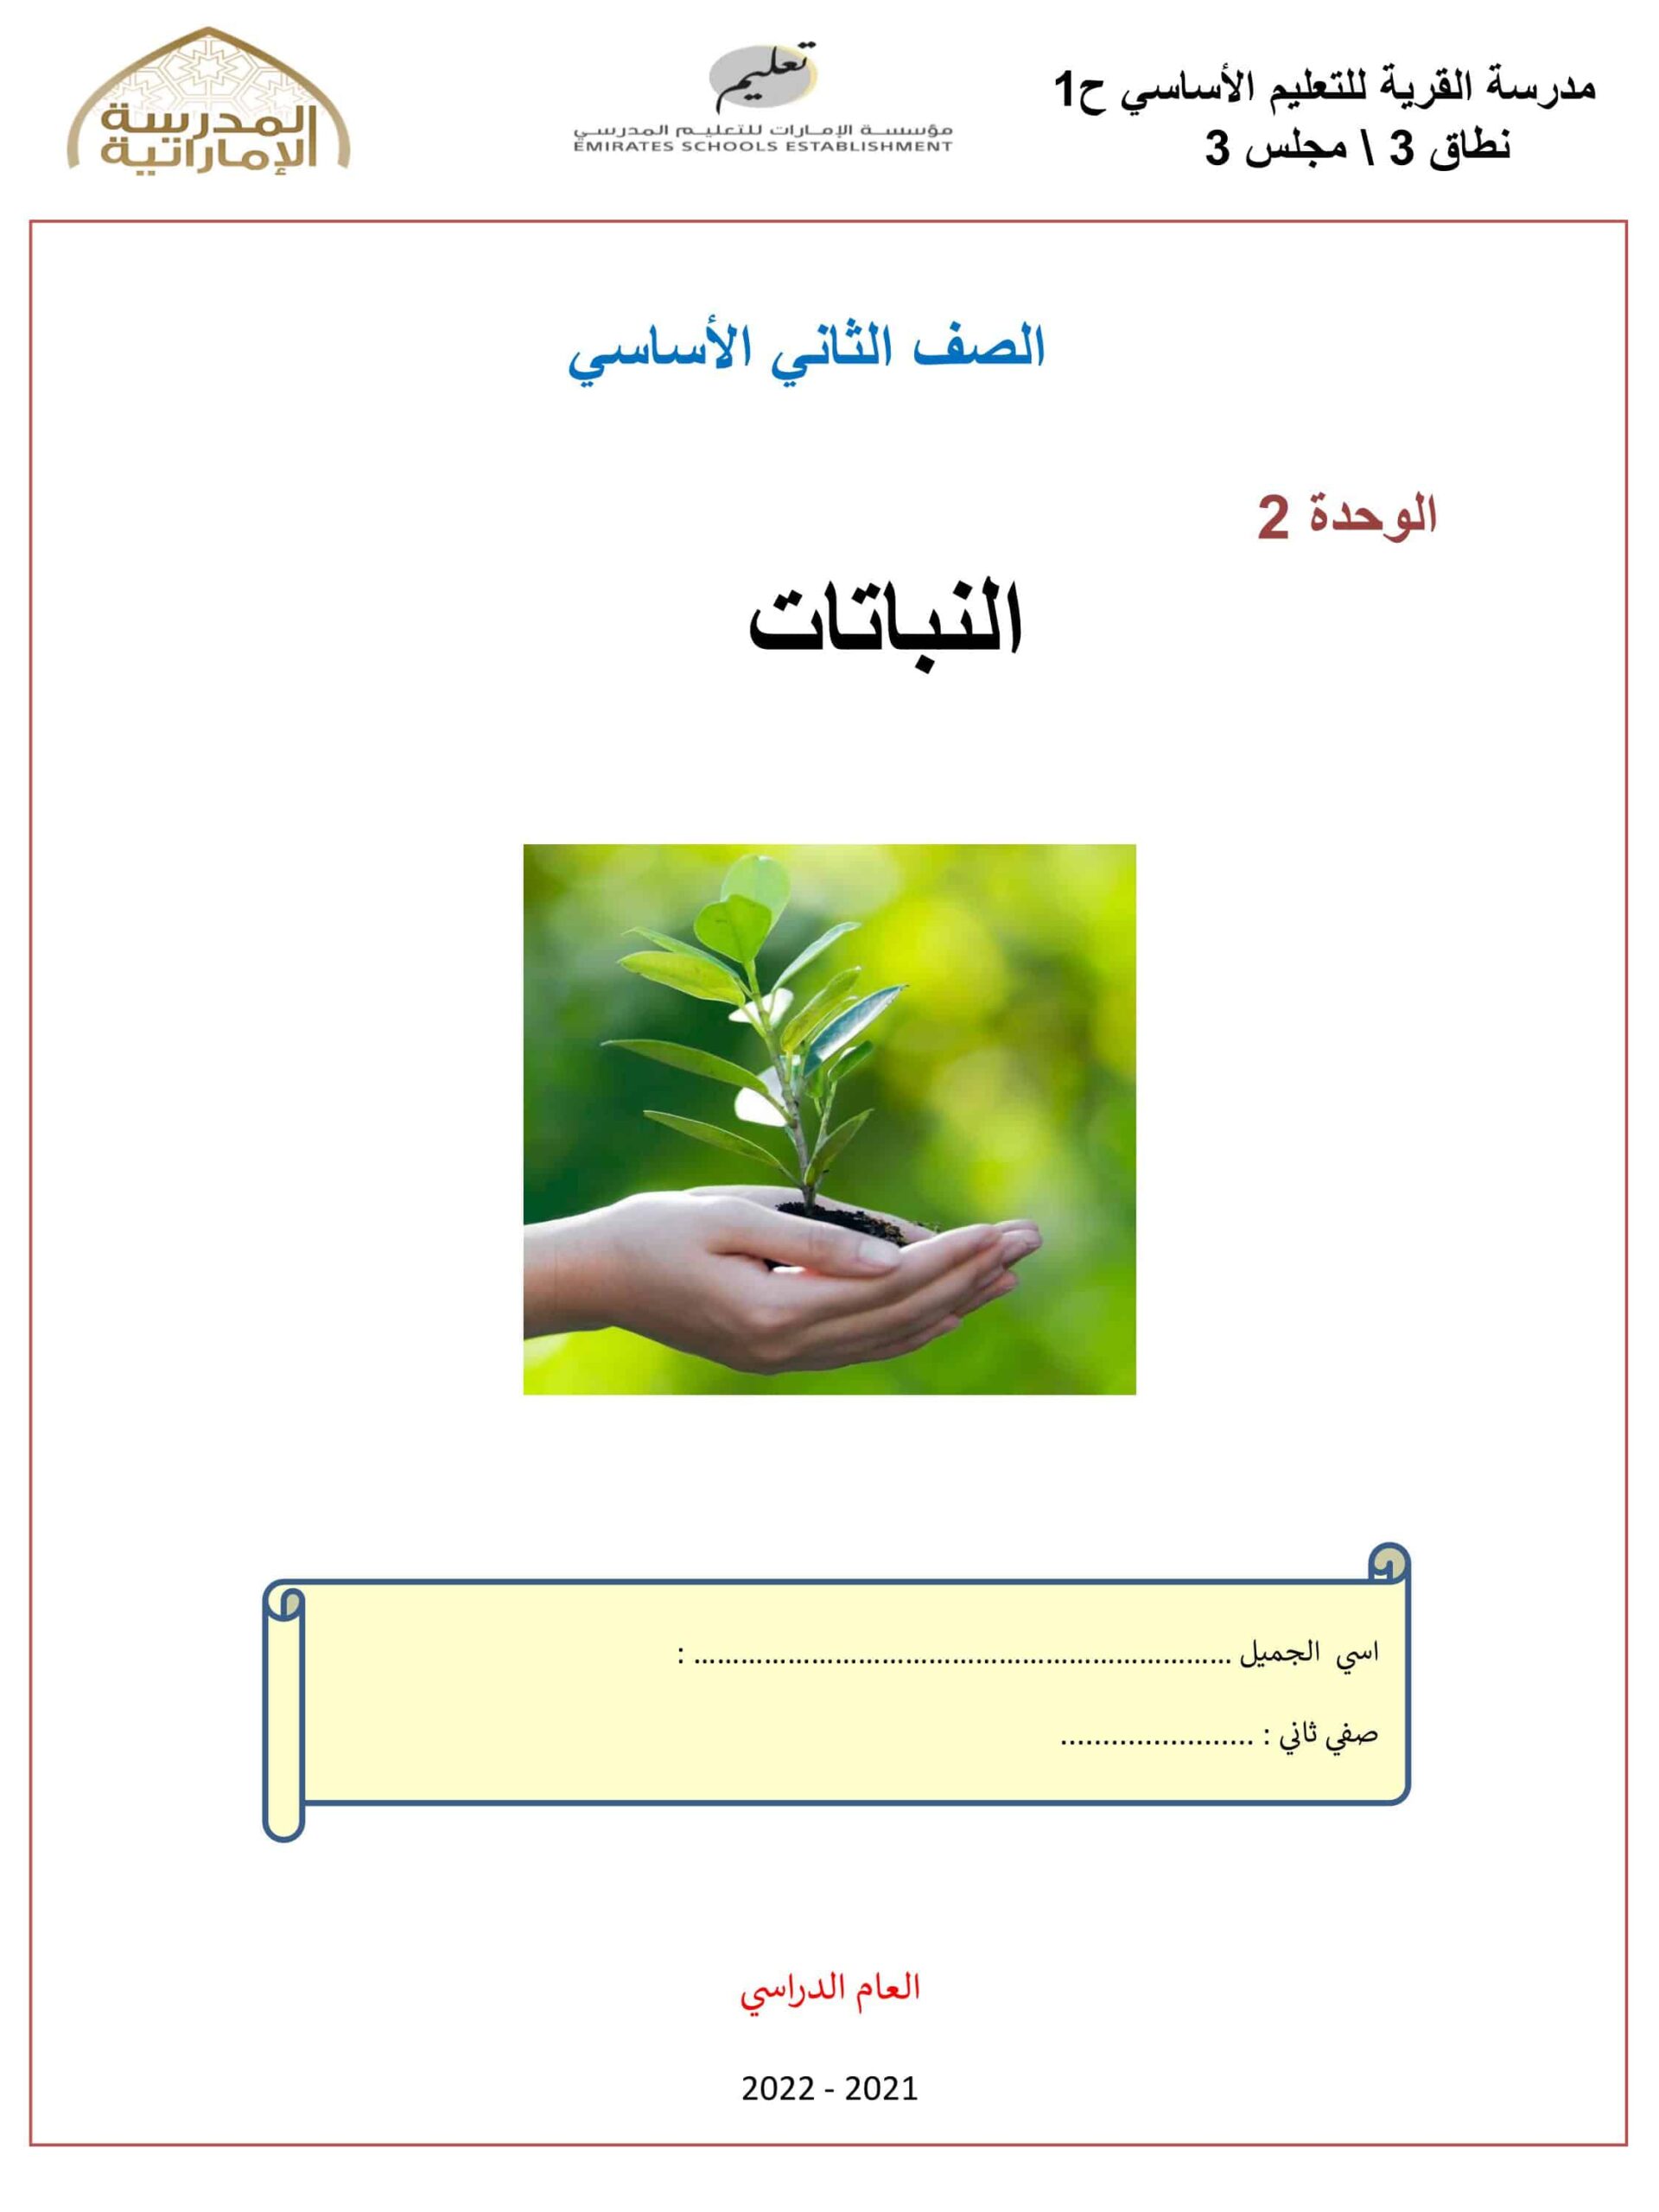 ملخص وأوراق عمل وحدة النباتات العلوم المتكاملة الصف الثاني